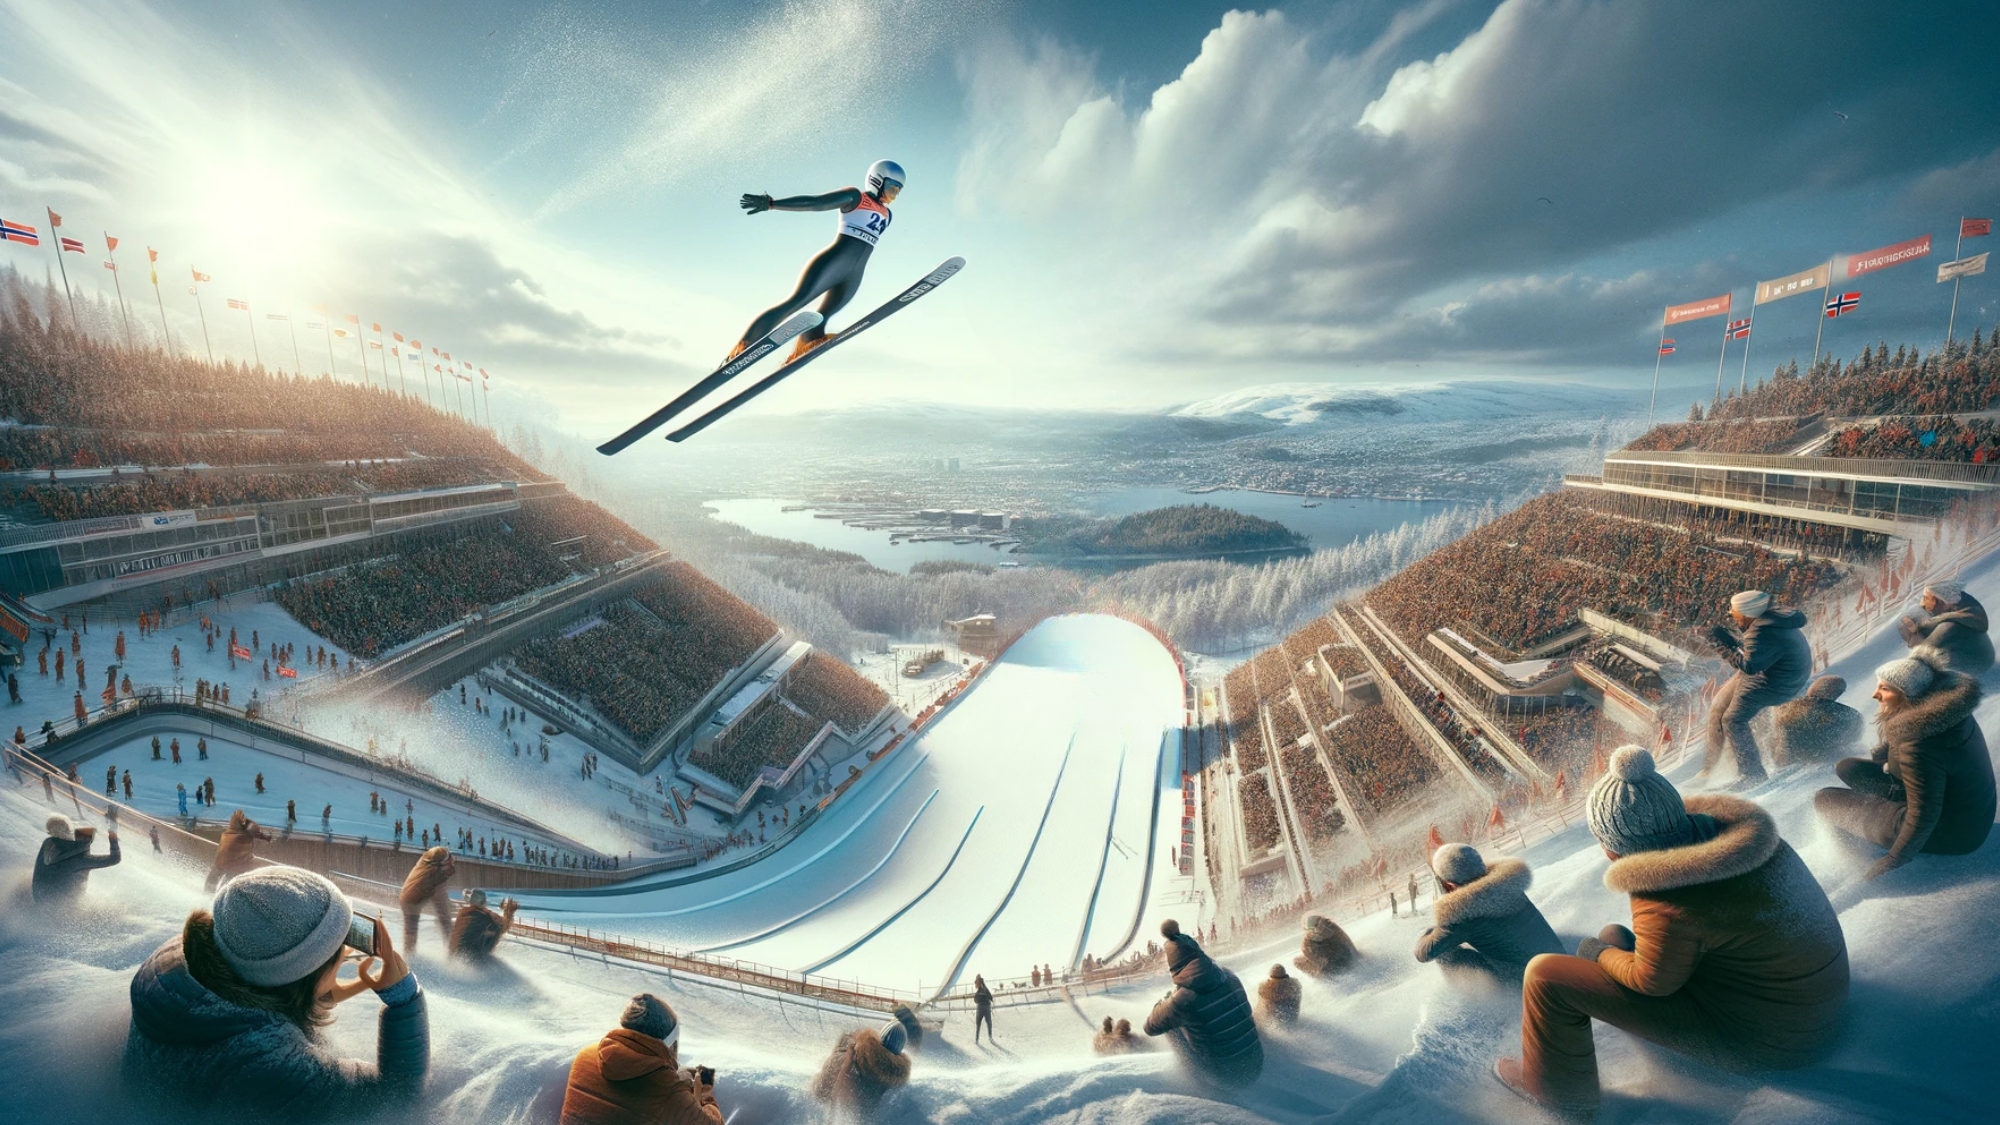 "Bilde av en skihopper i aksjon på Holmenkollen med tilskuere og vinterlandskap."